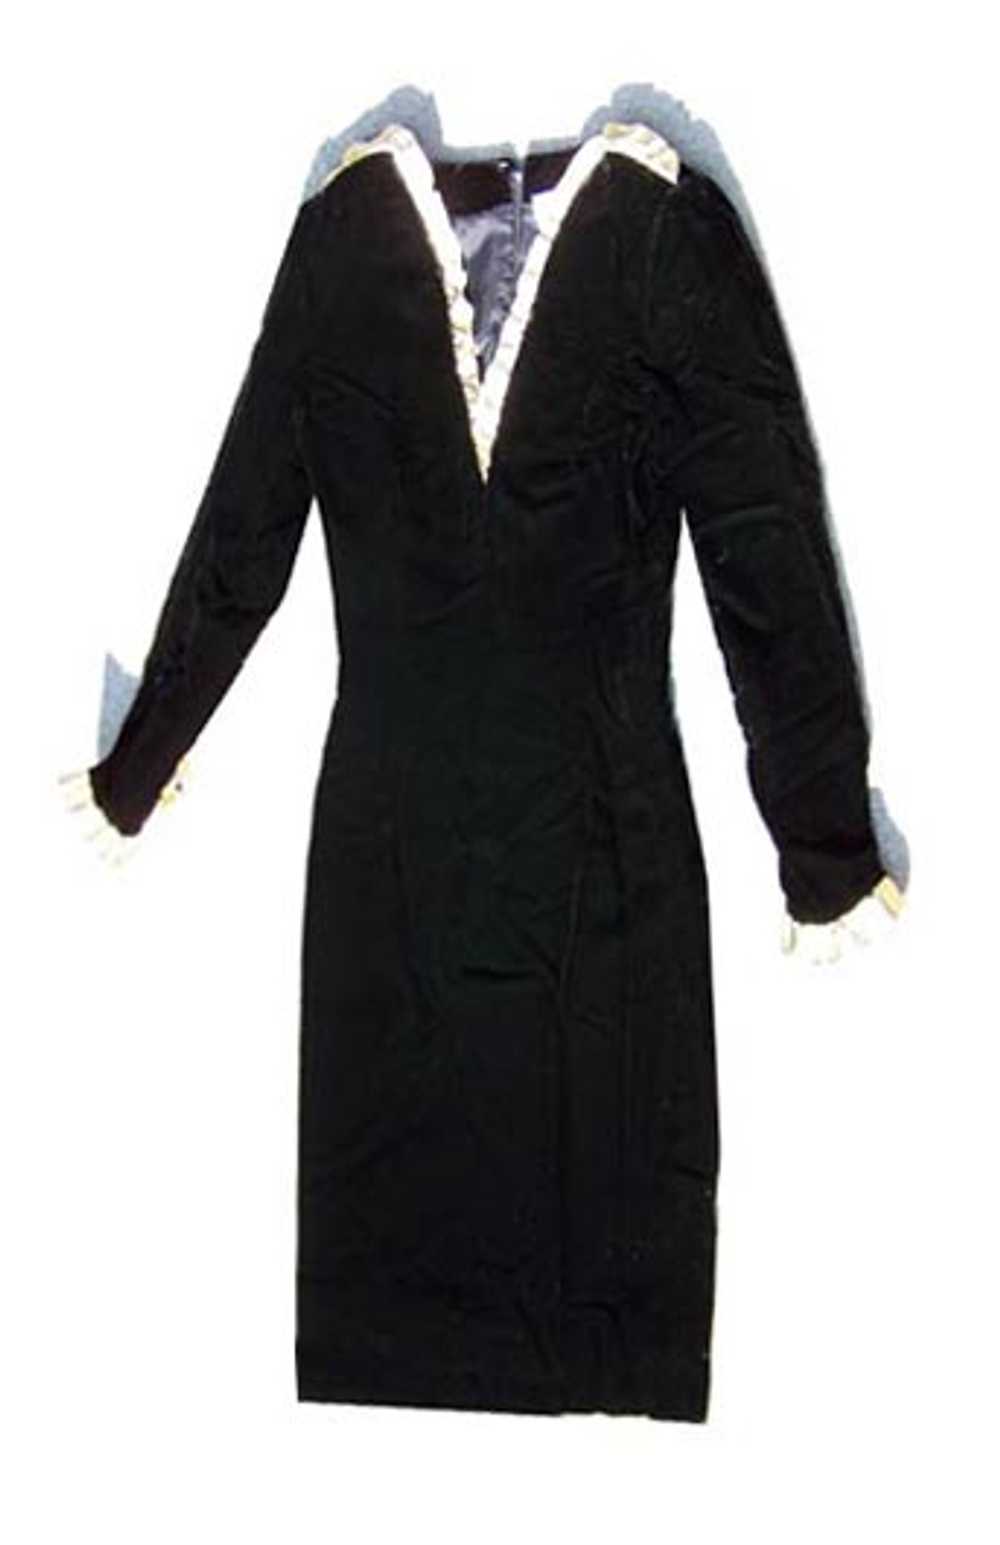 Givenchy snakeskin velvet dress - image 6